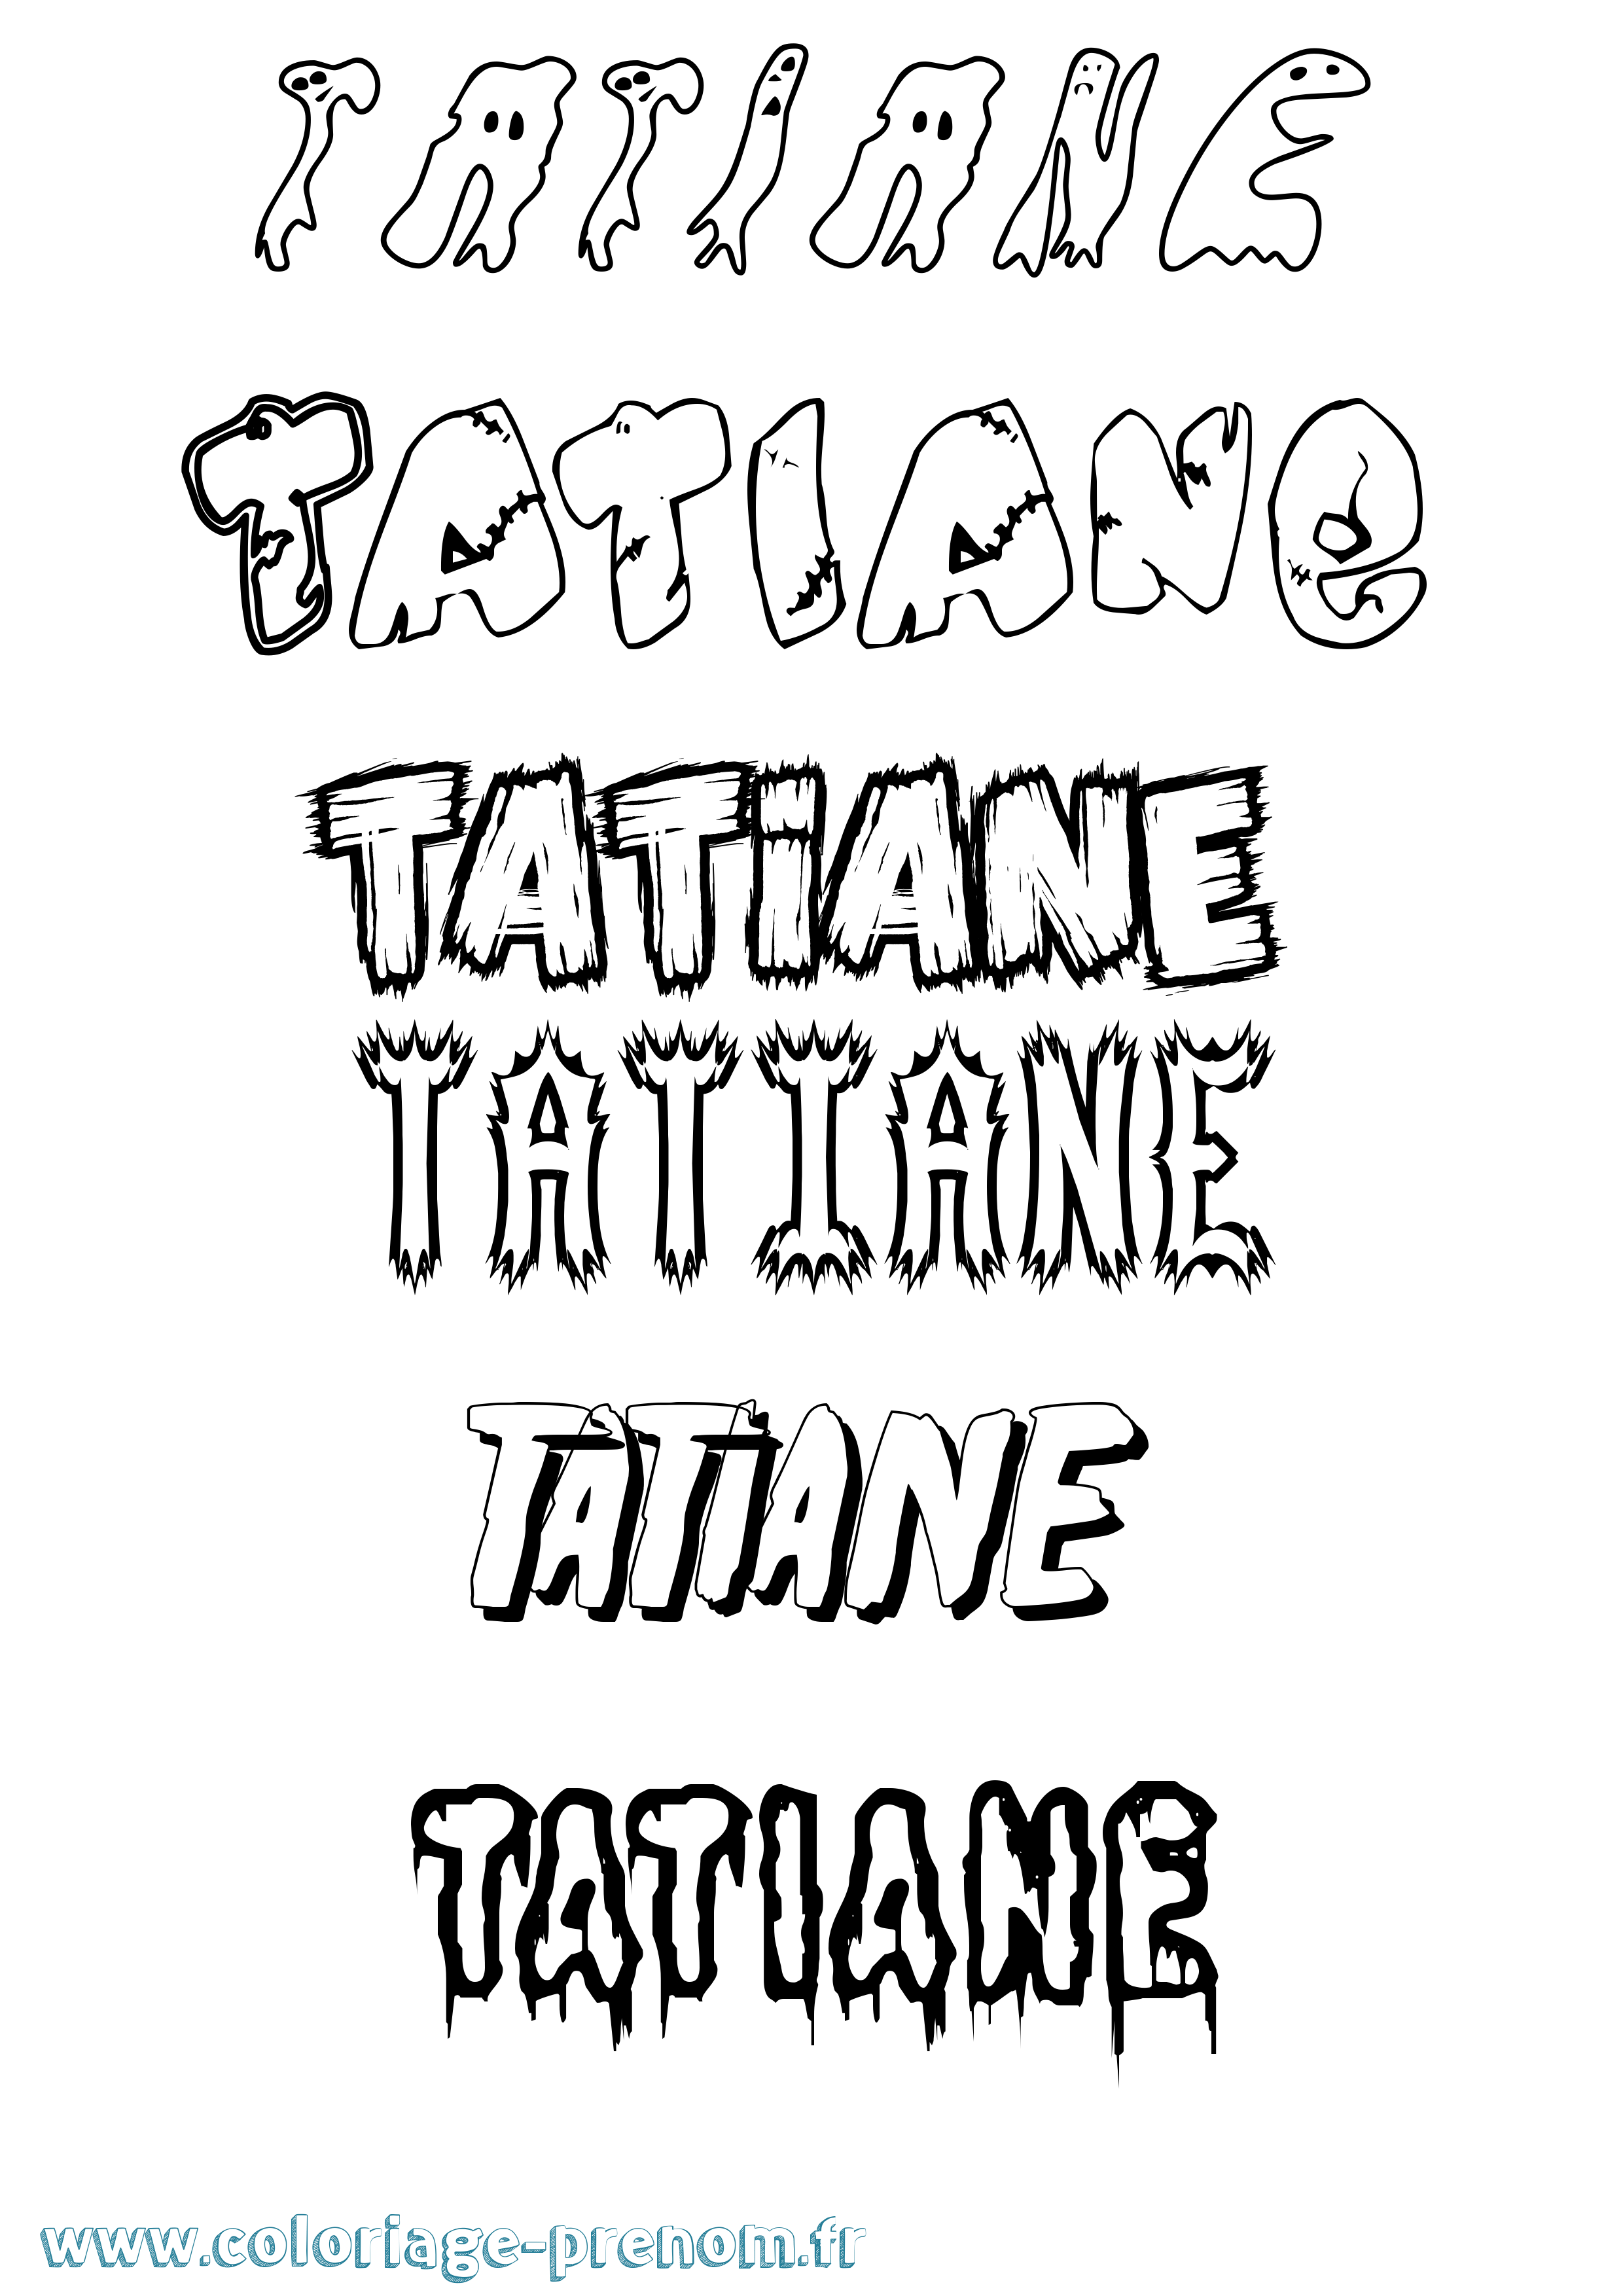 Coloriage prénom Tatiane Frisson